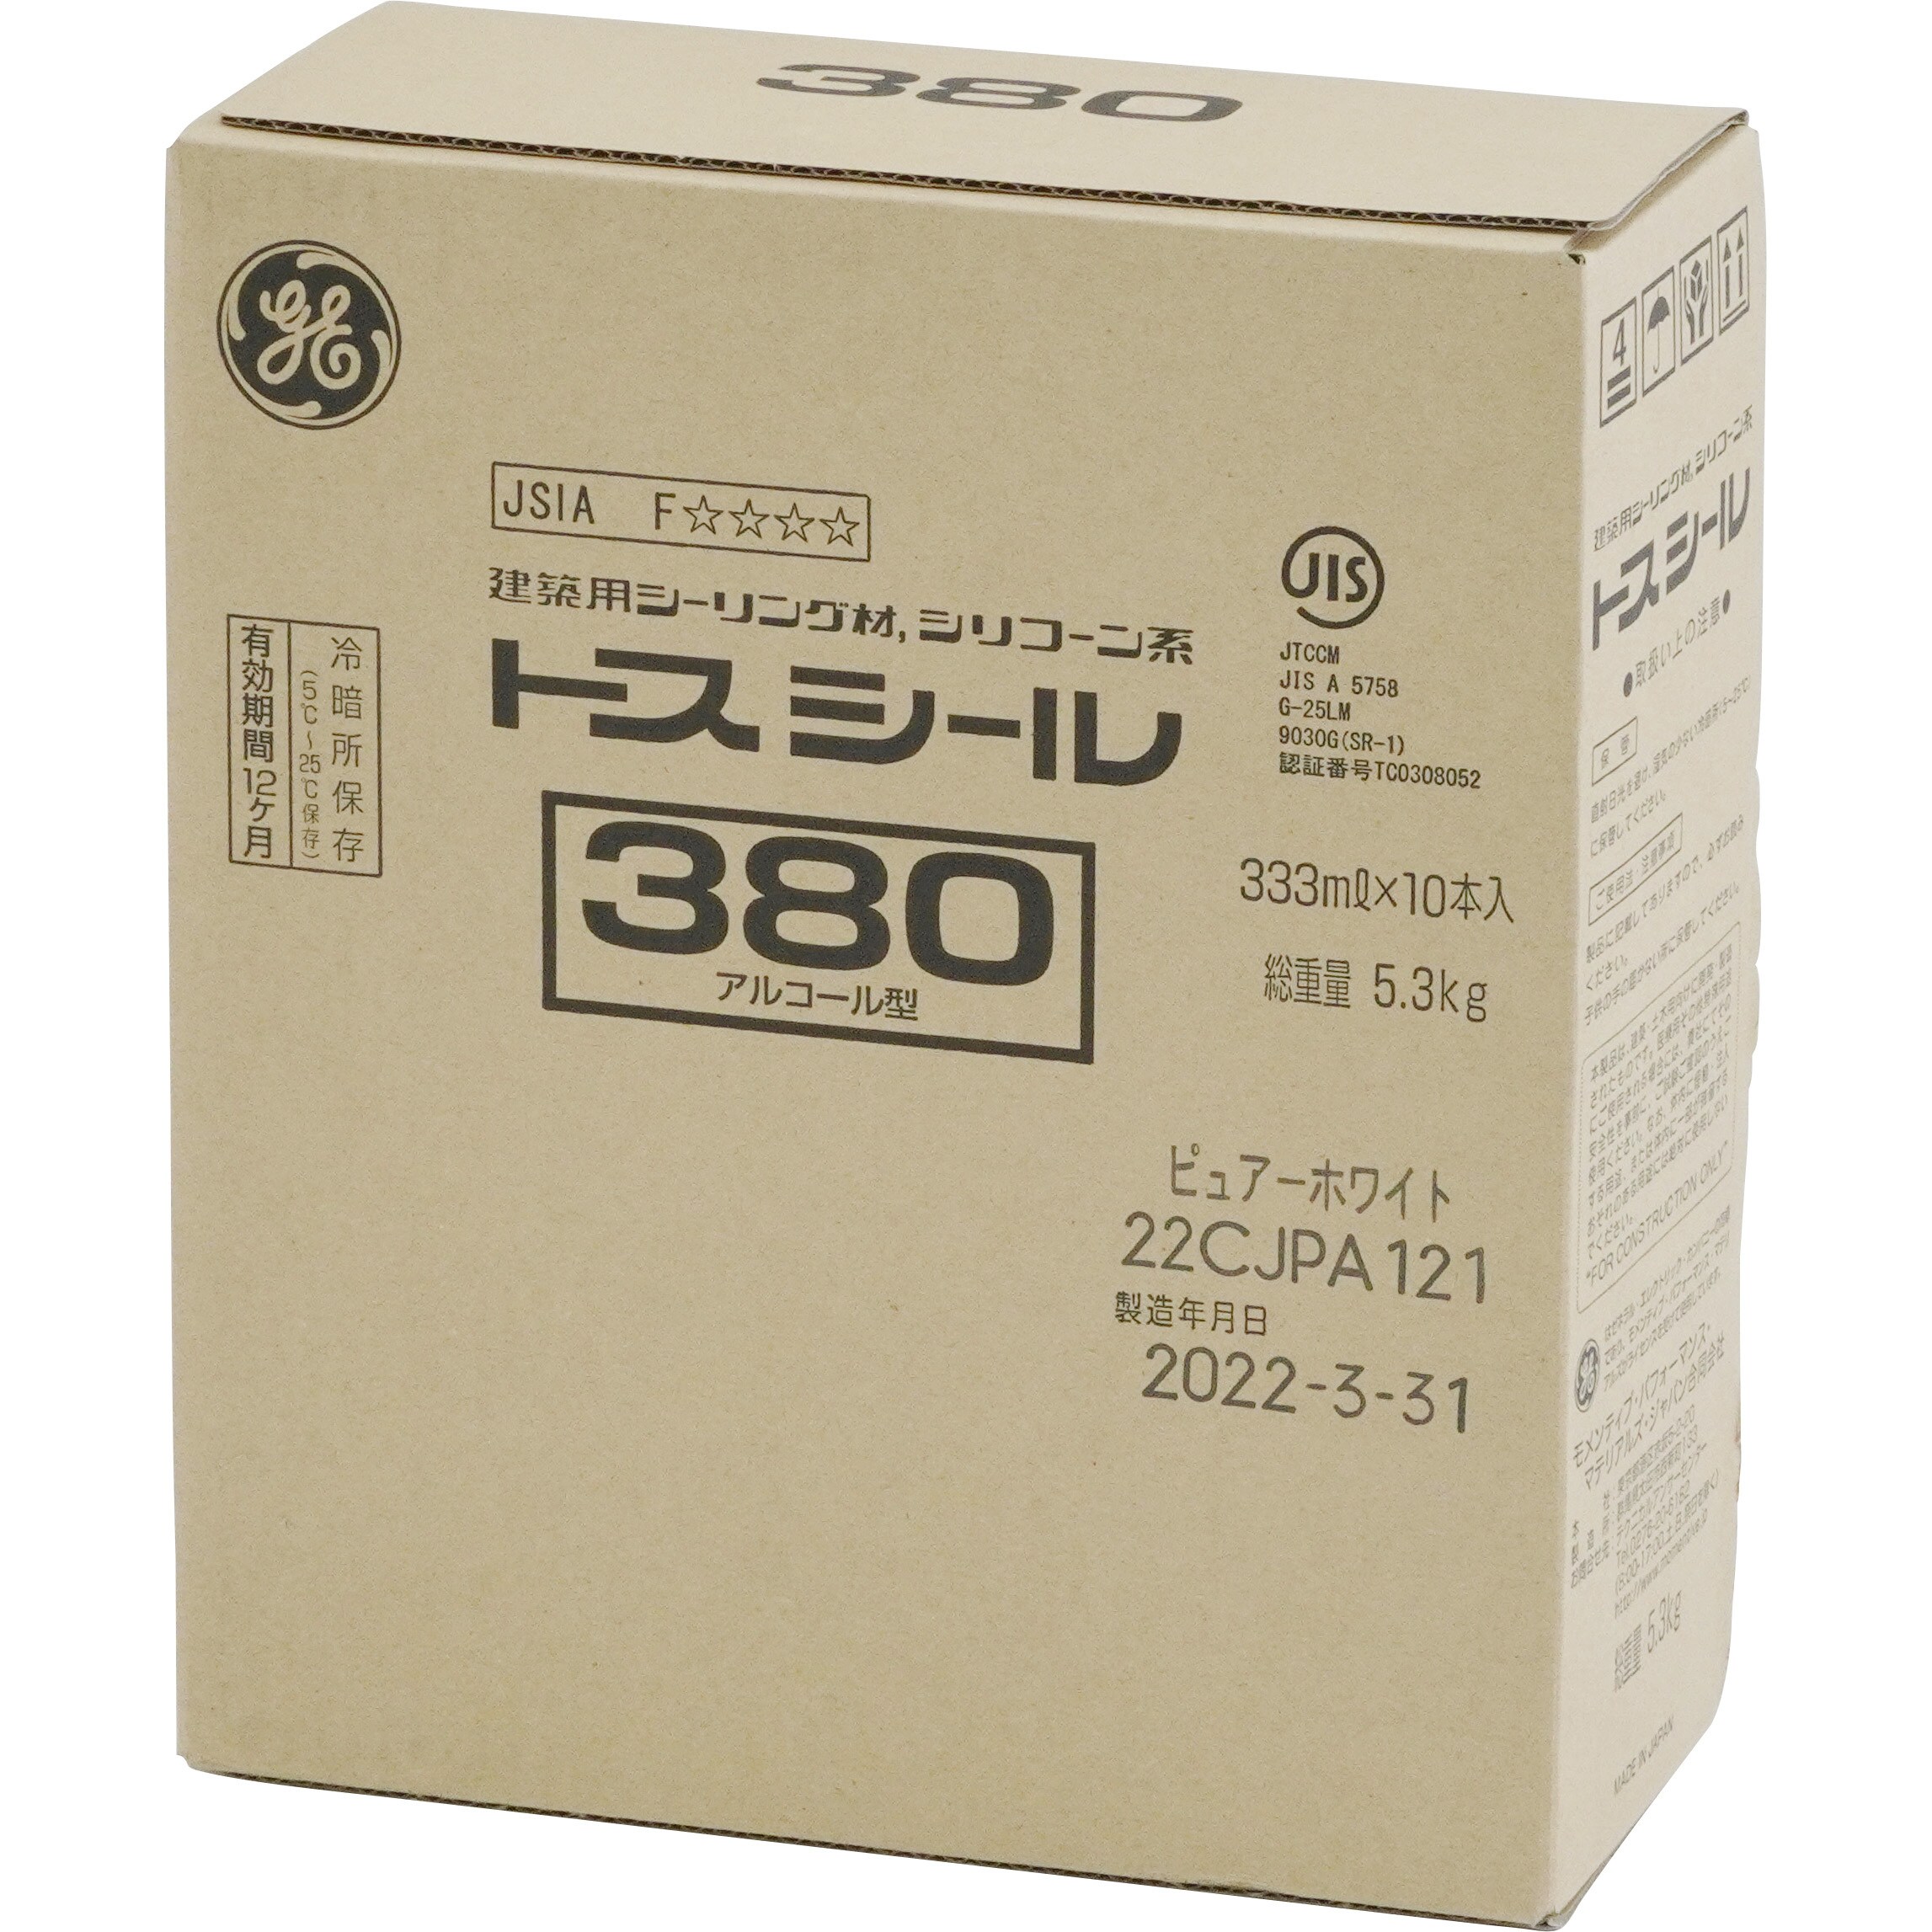 トスシール 380 1箱(333mL×10本) モメンティブジャパン(旧GE東芝